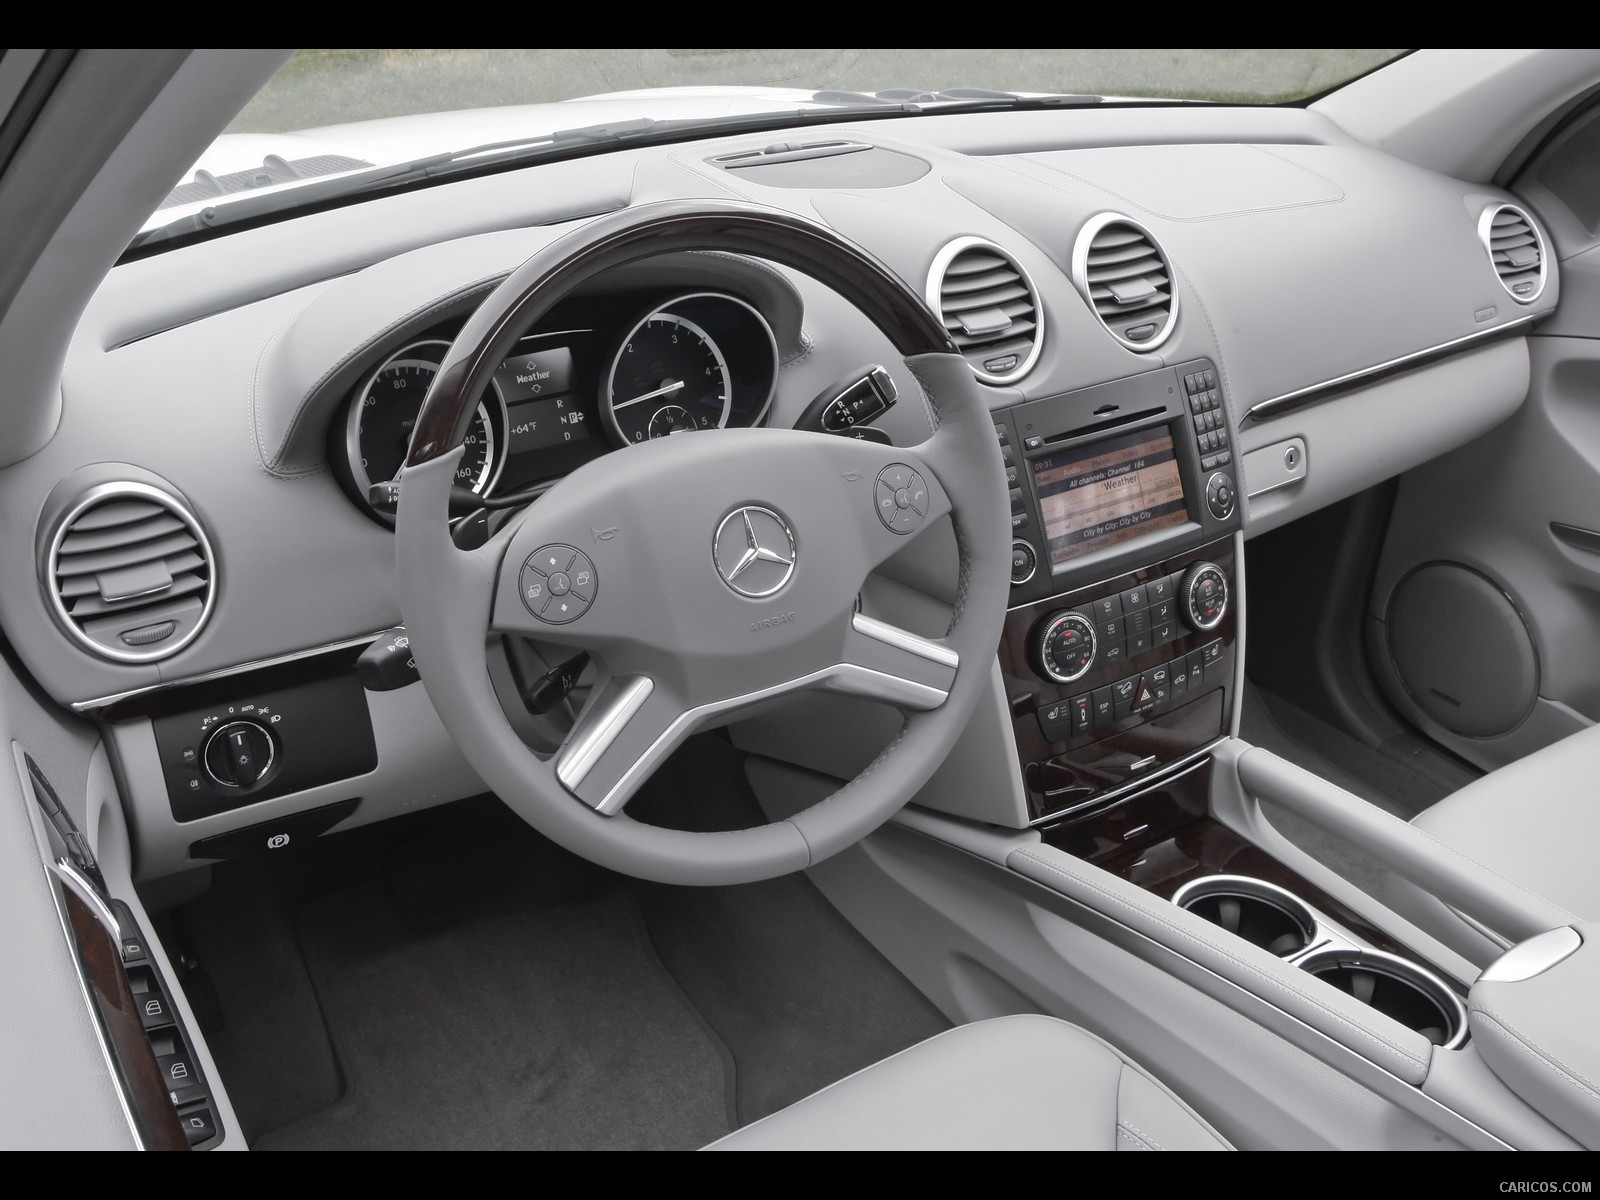 2010 Mercedes-Benz GL350 BlueTEC - Interior, #24 of 112